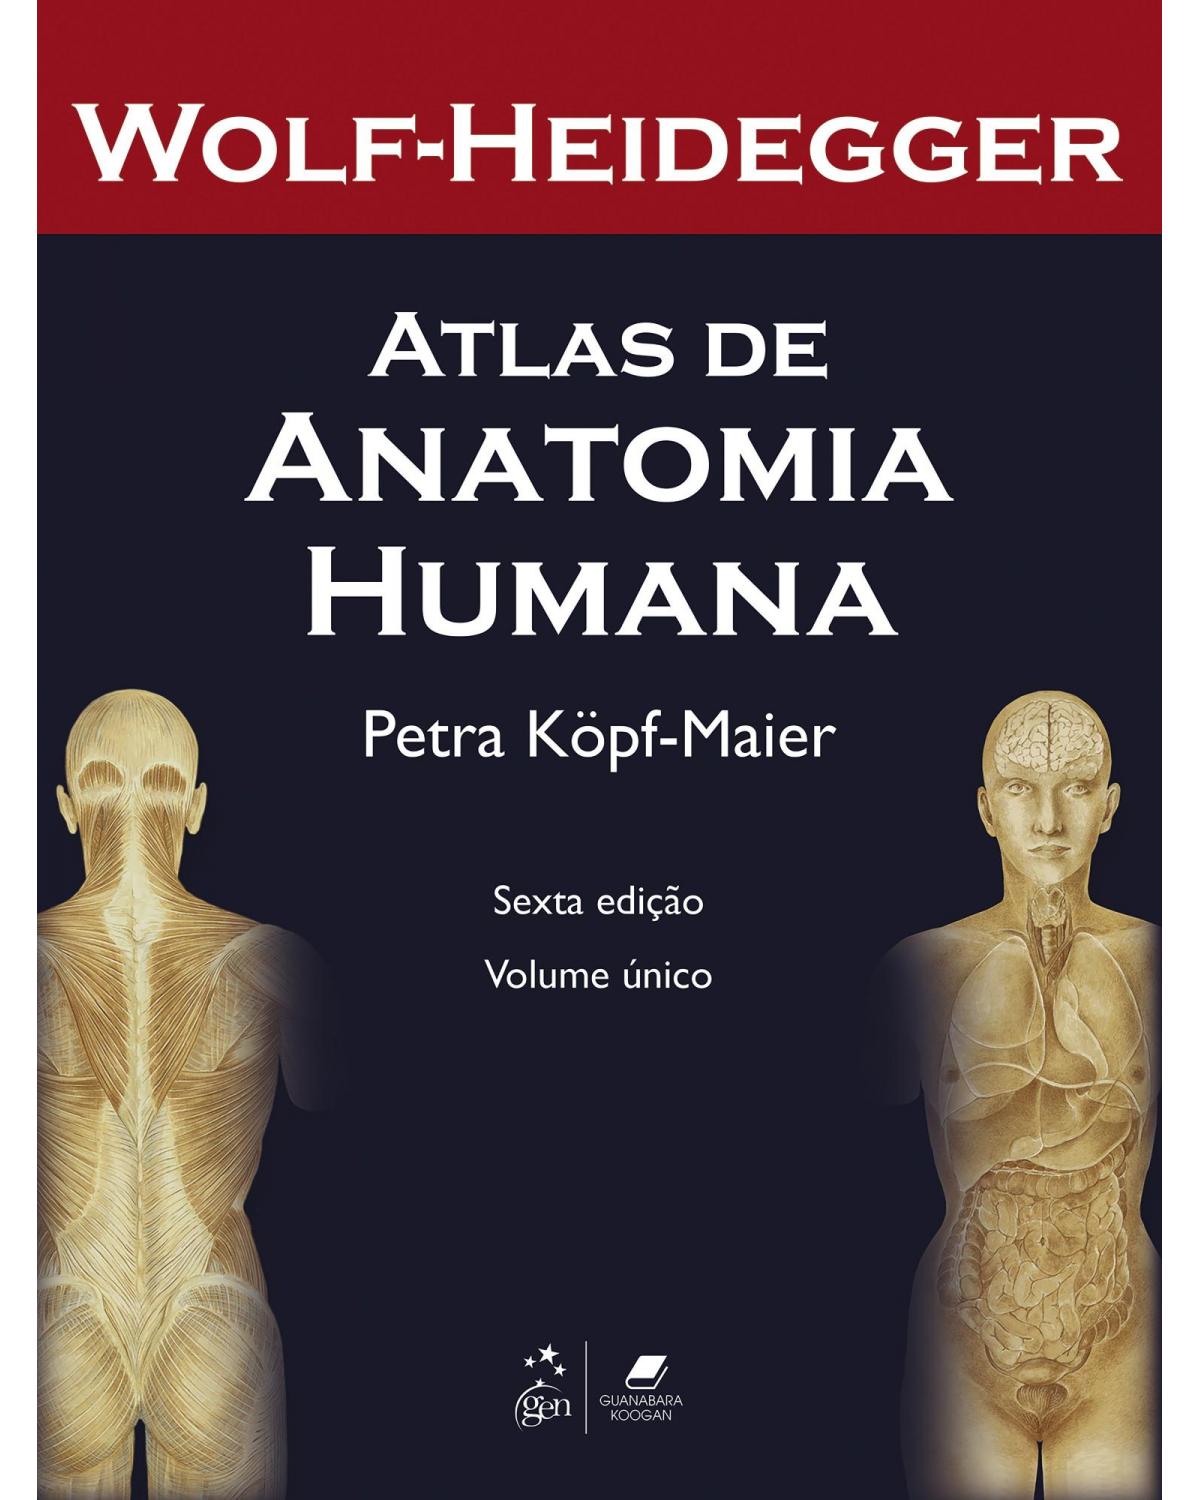 Wolf-Heidegger - Atlas de anatomia humana - com numerosas aplicações clínicas - 6ª Edição | 2006